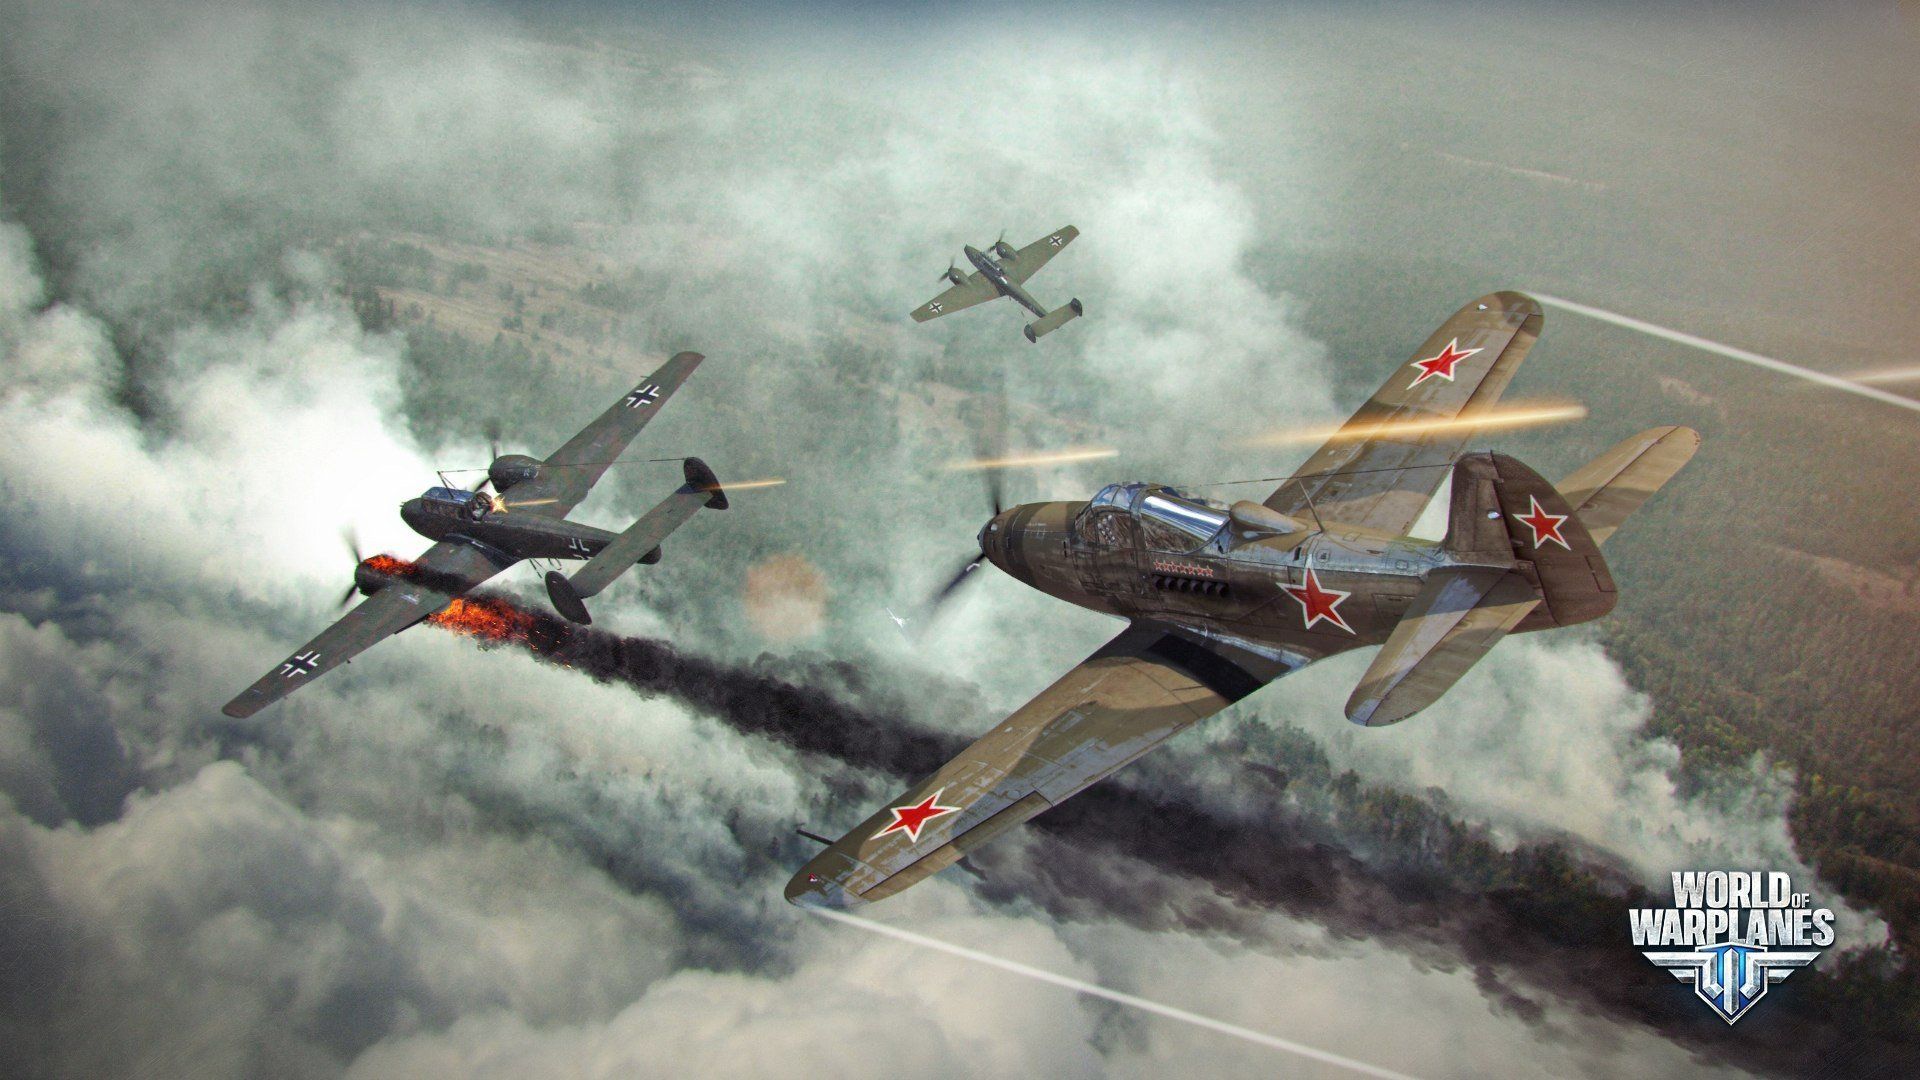 World of Warplanes, Warplanes, Wargaming, Airplane, Bell P 39